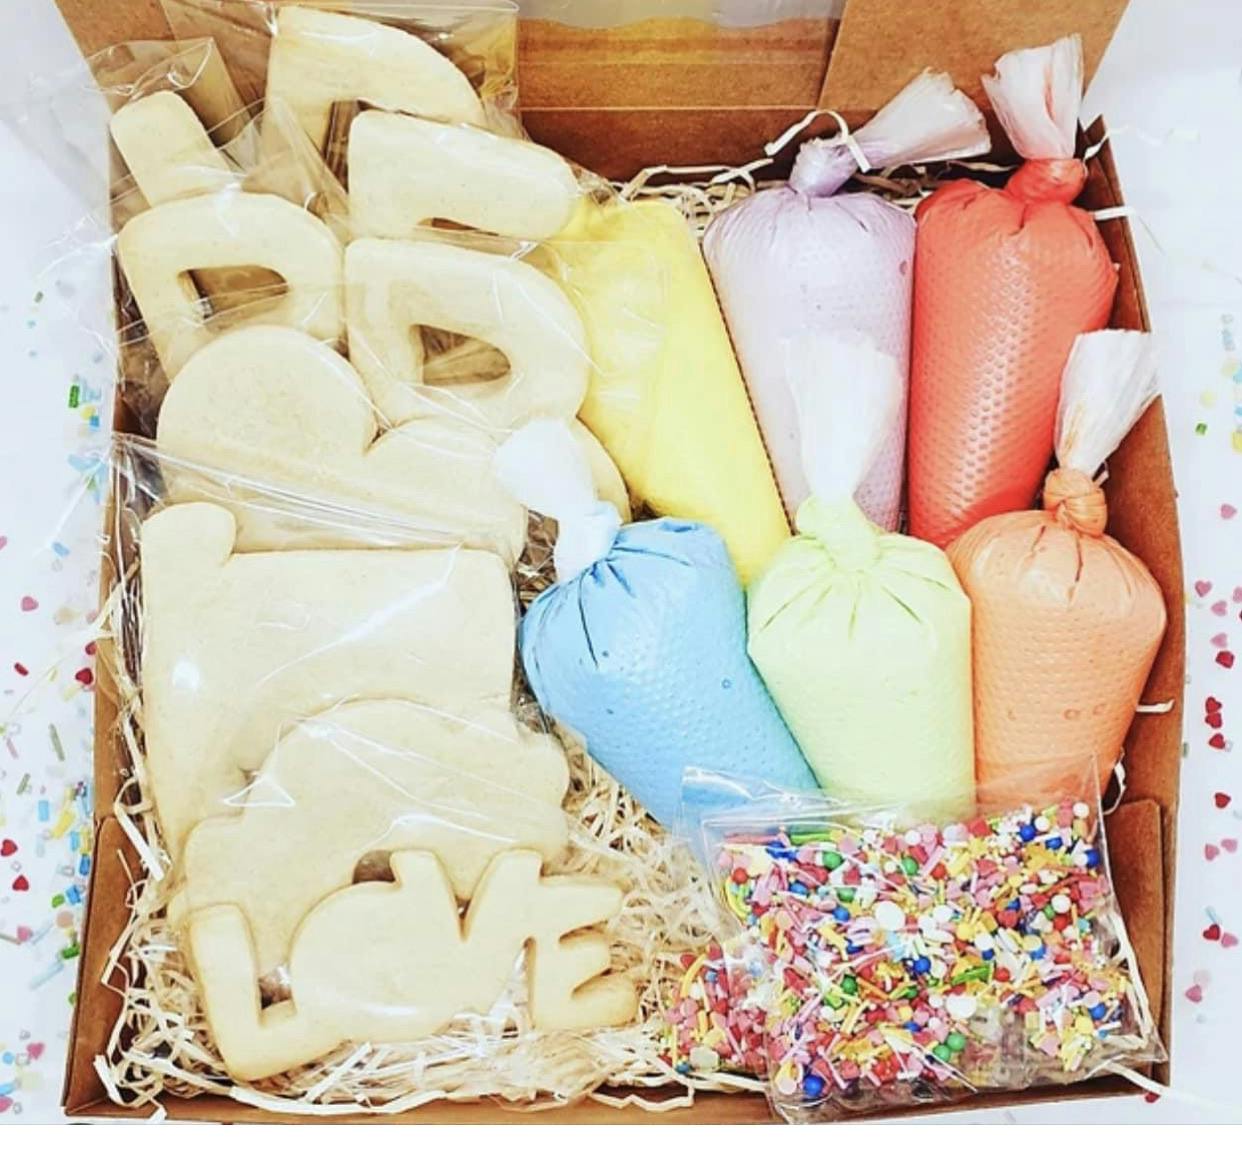 DIY pride month cookie decorating kit 